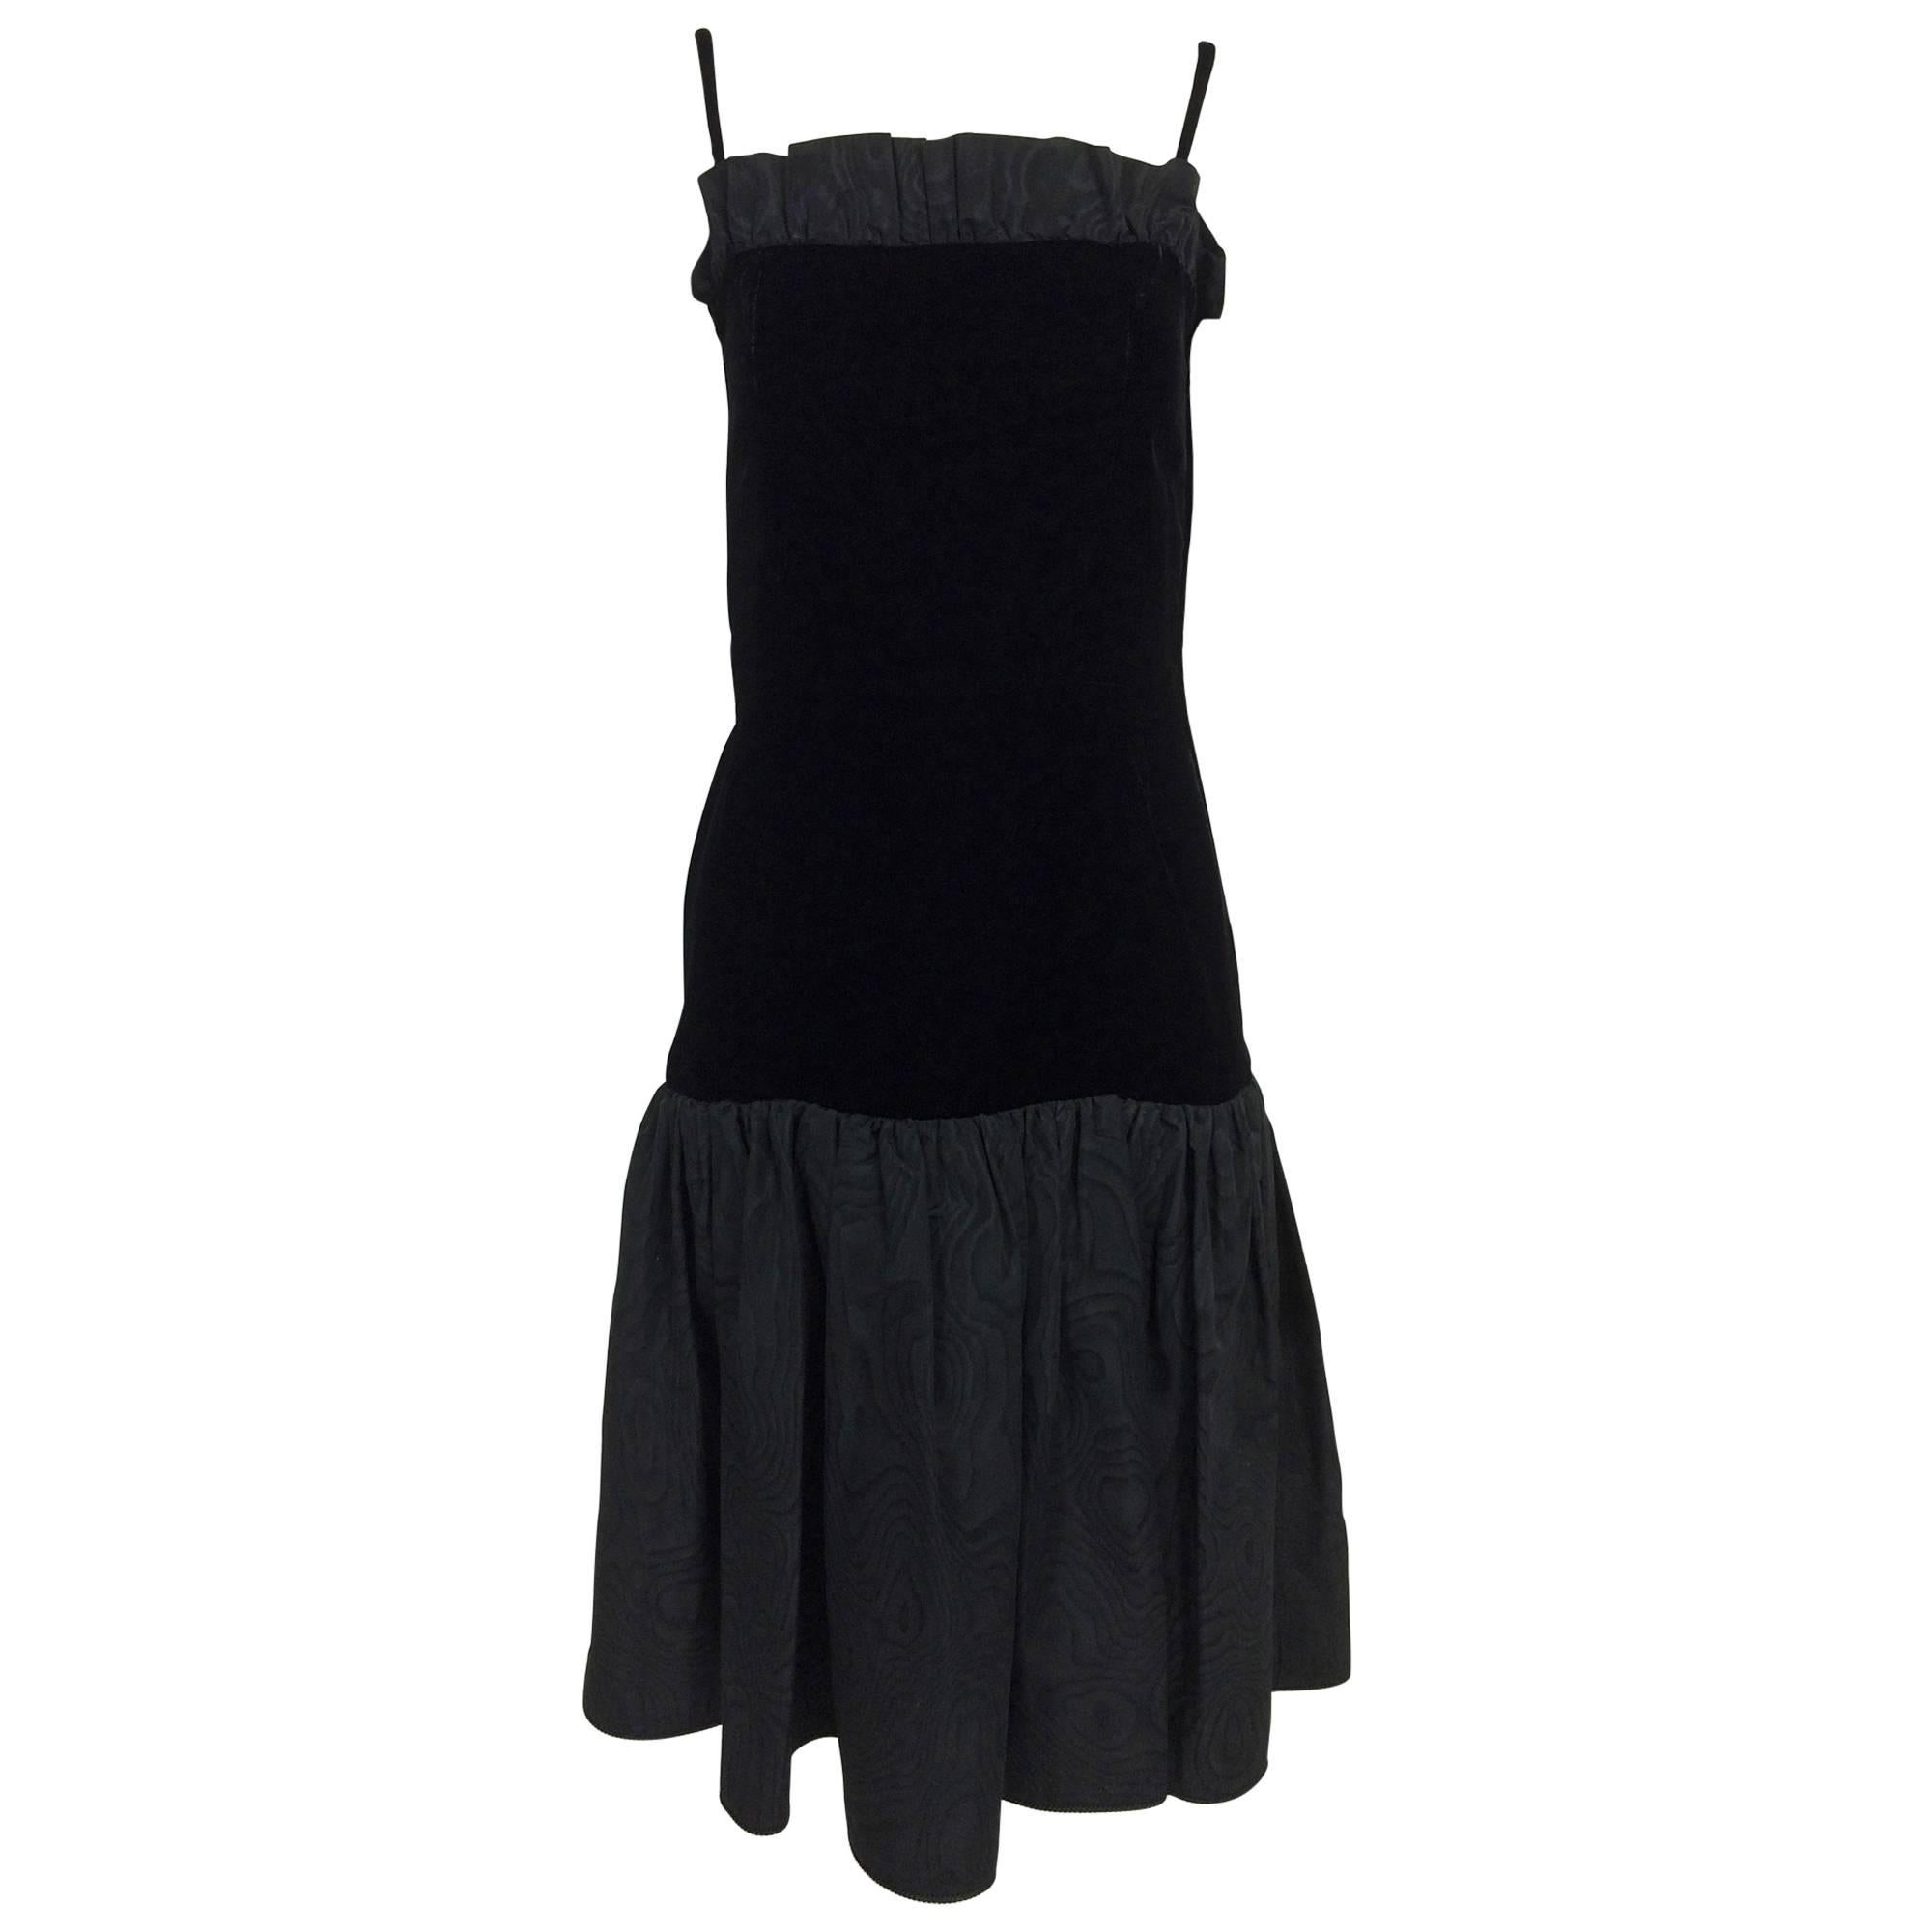 Yves St Laurent black velvet & taffeta fitted bodice flare hem cocktail dress